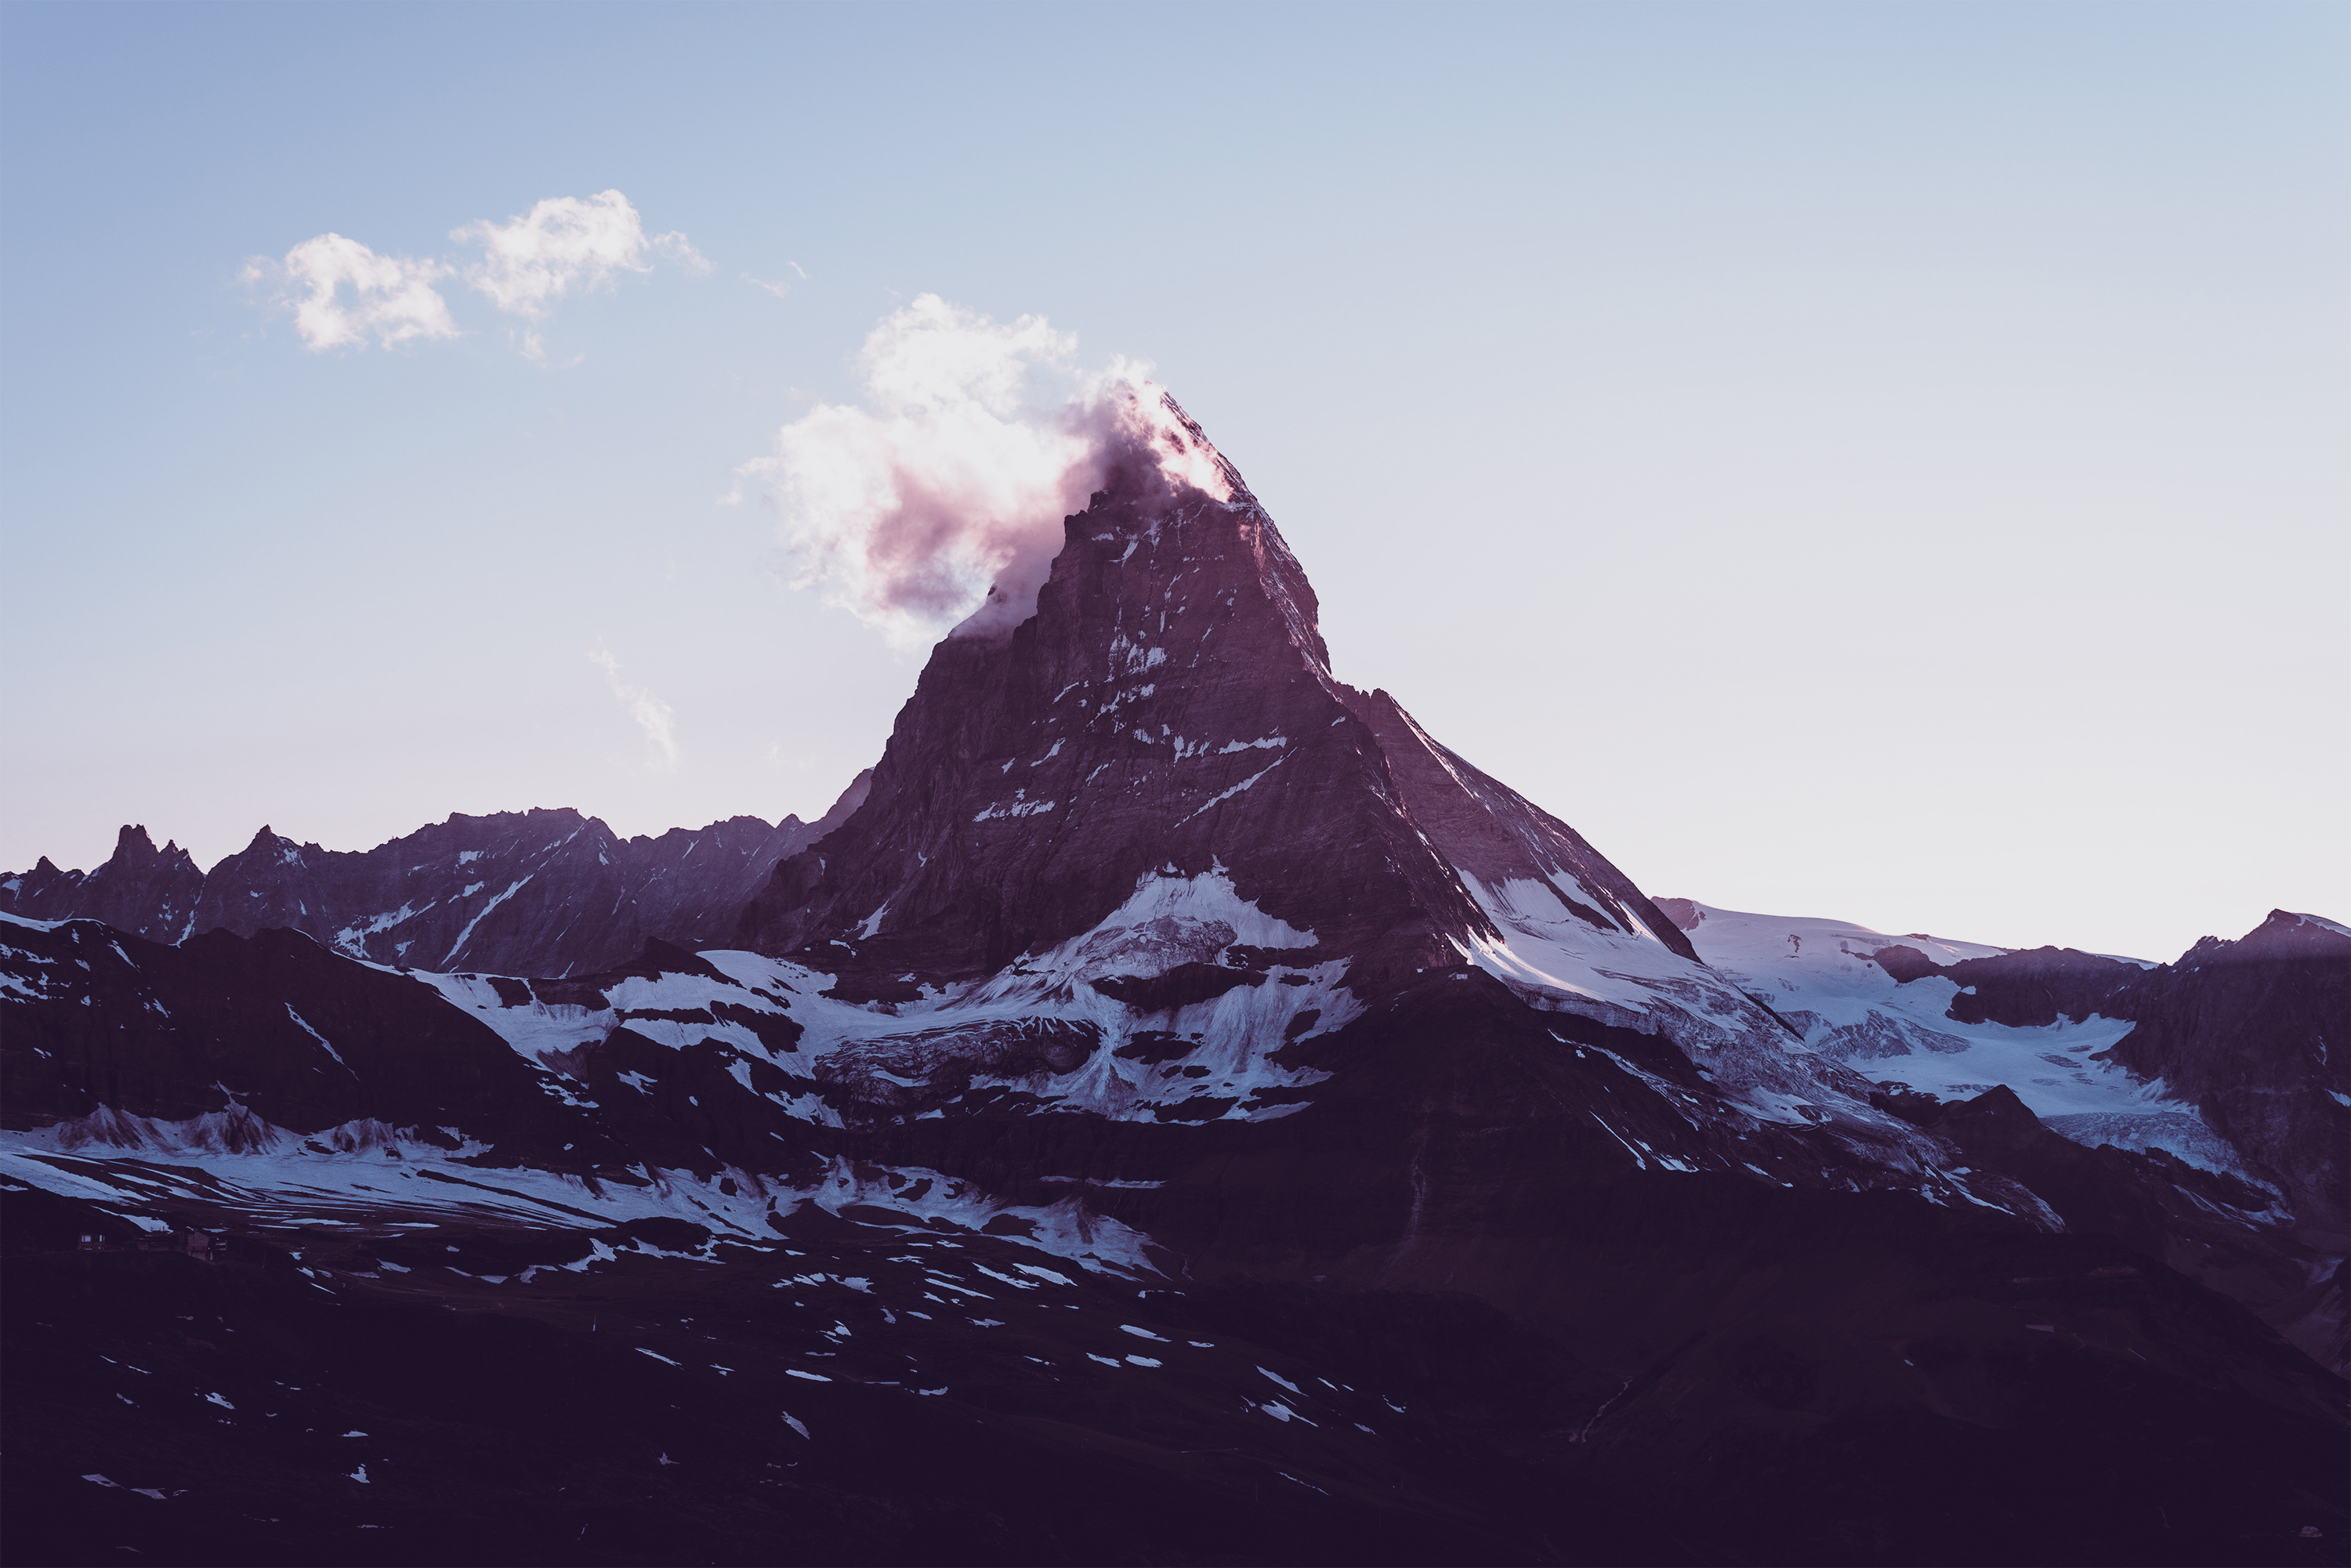 General 3000x2001 landscape mountains clouds nature rocks Matterhorn